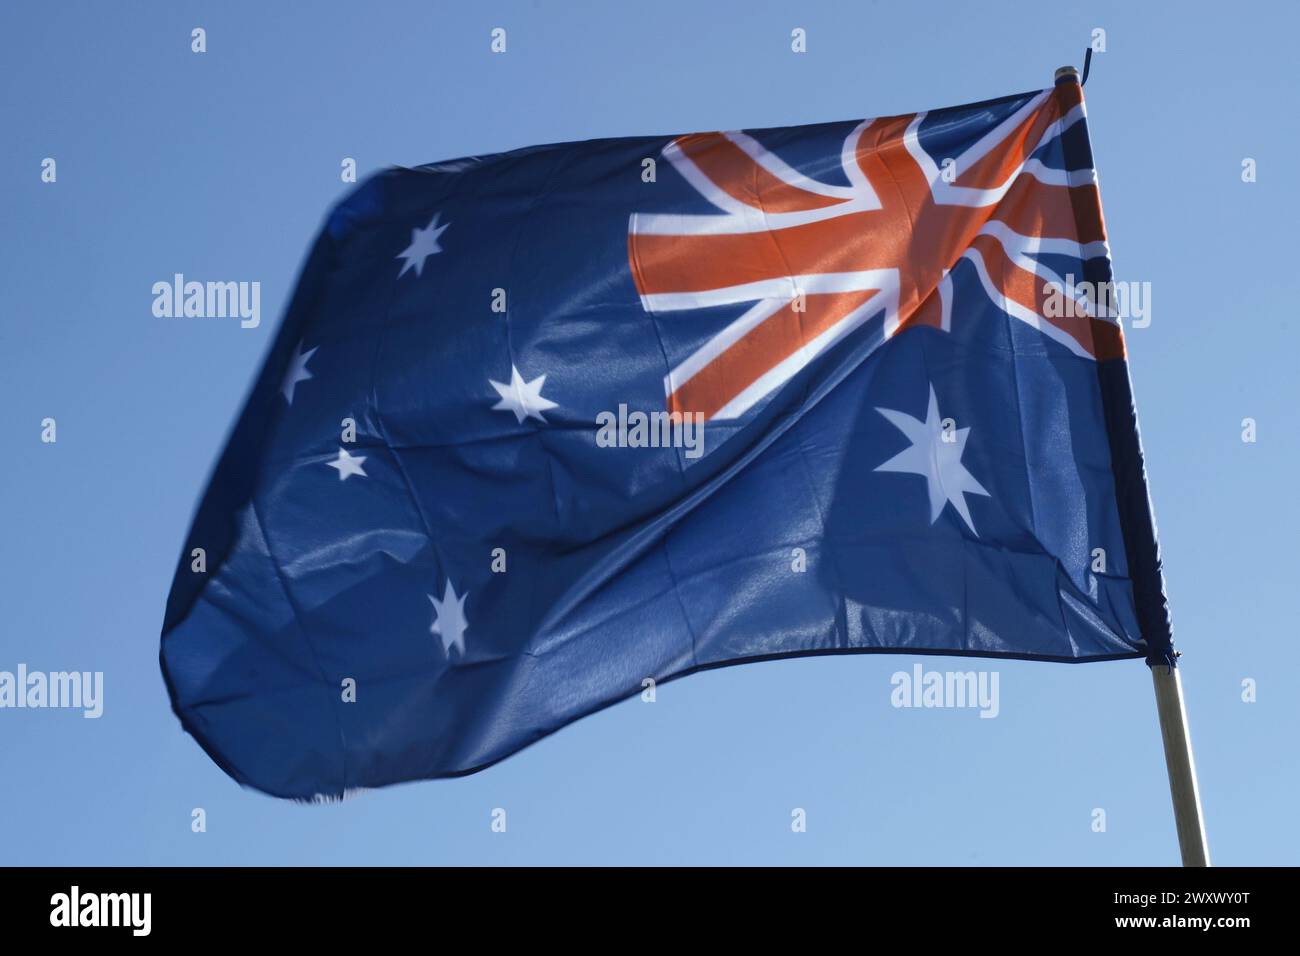 Le drapeau national australien flotte dans le vent, mettant en valeur son emblématique motif Union Jack et étoile sous le ciel lumineux. Banque D'Images